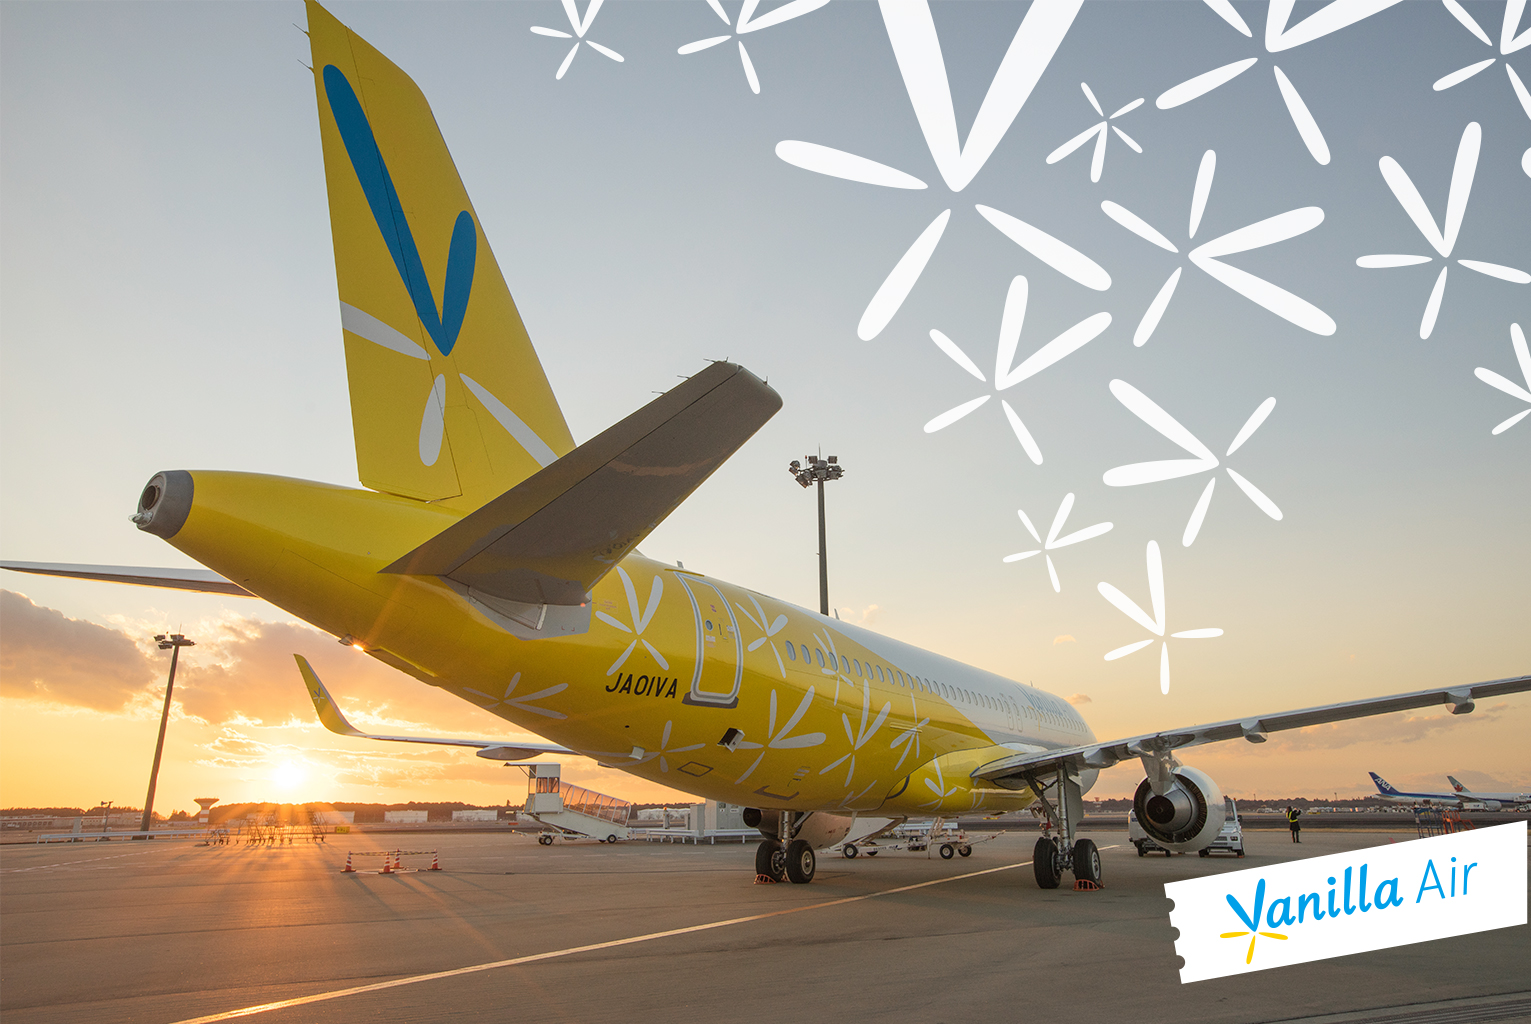 香草航空以鮮黃色搭配白色與藍色，打造清新優質的品牌形象。(圖片提供／香草航空)